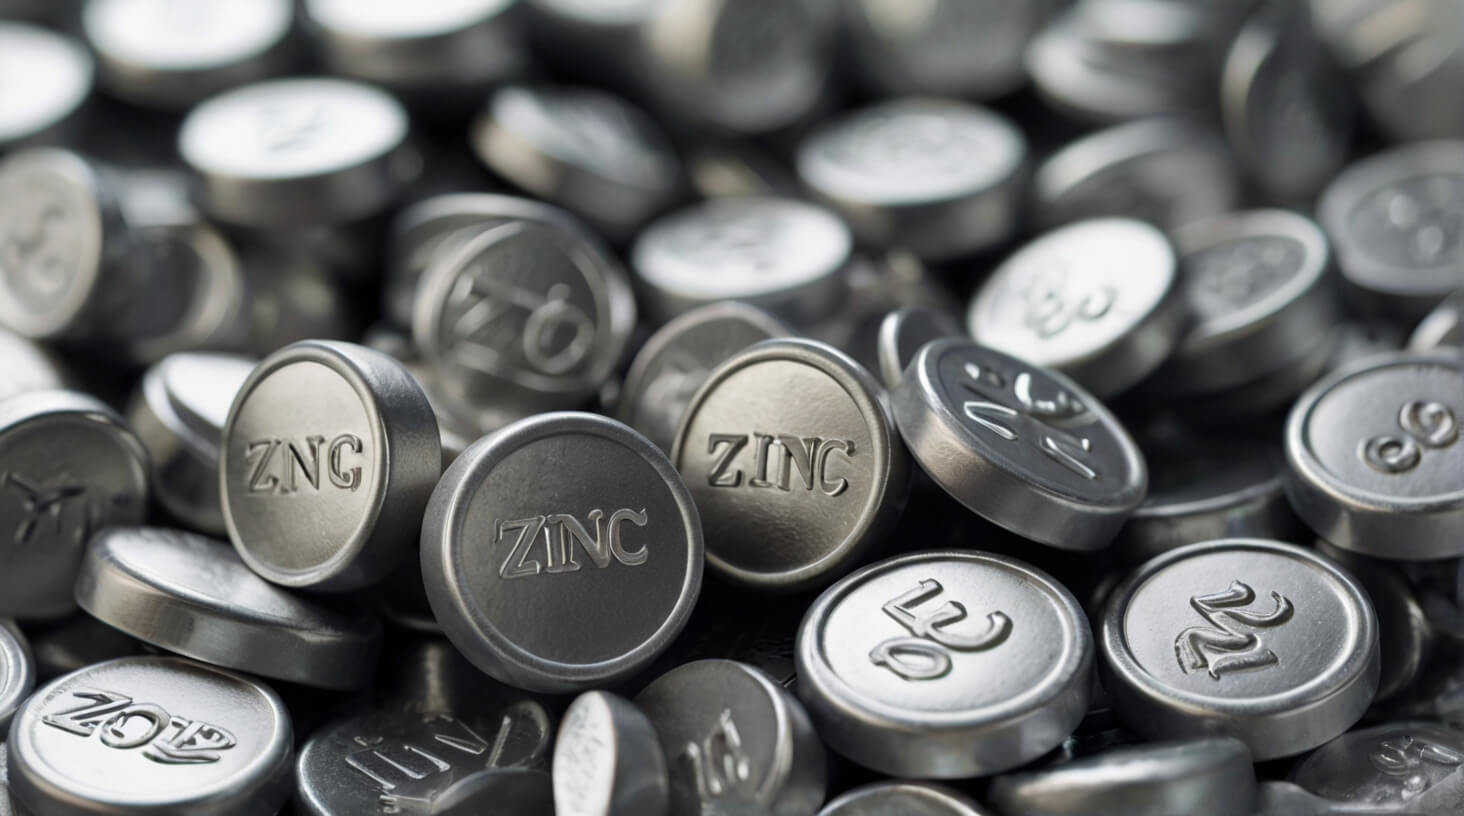 A bottle of zinc supplements